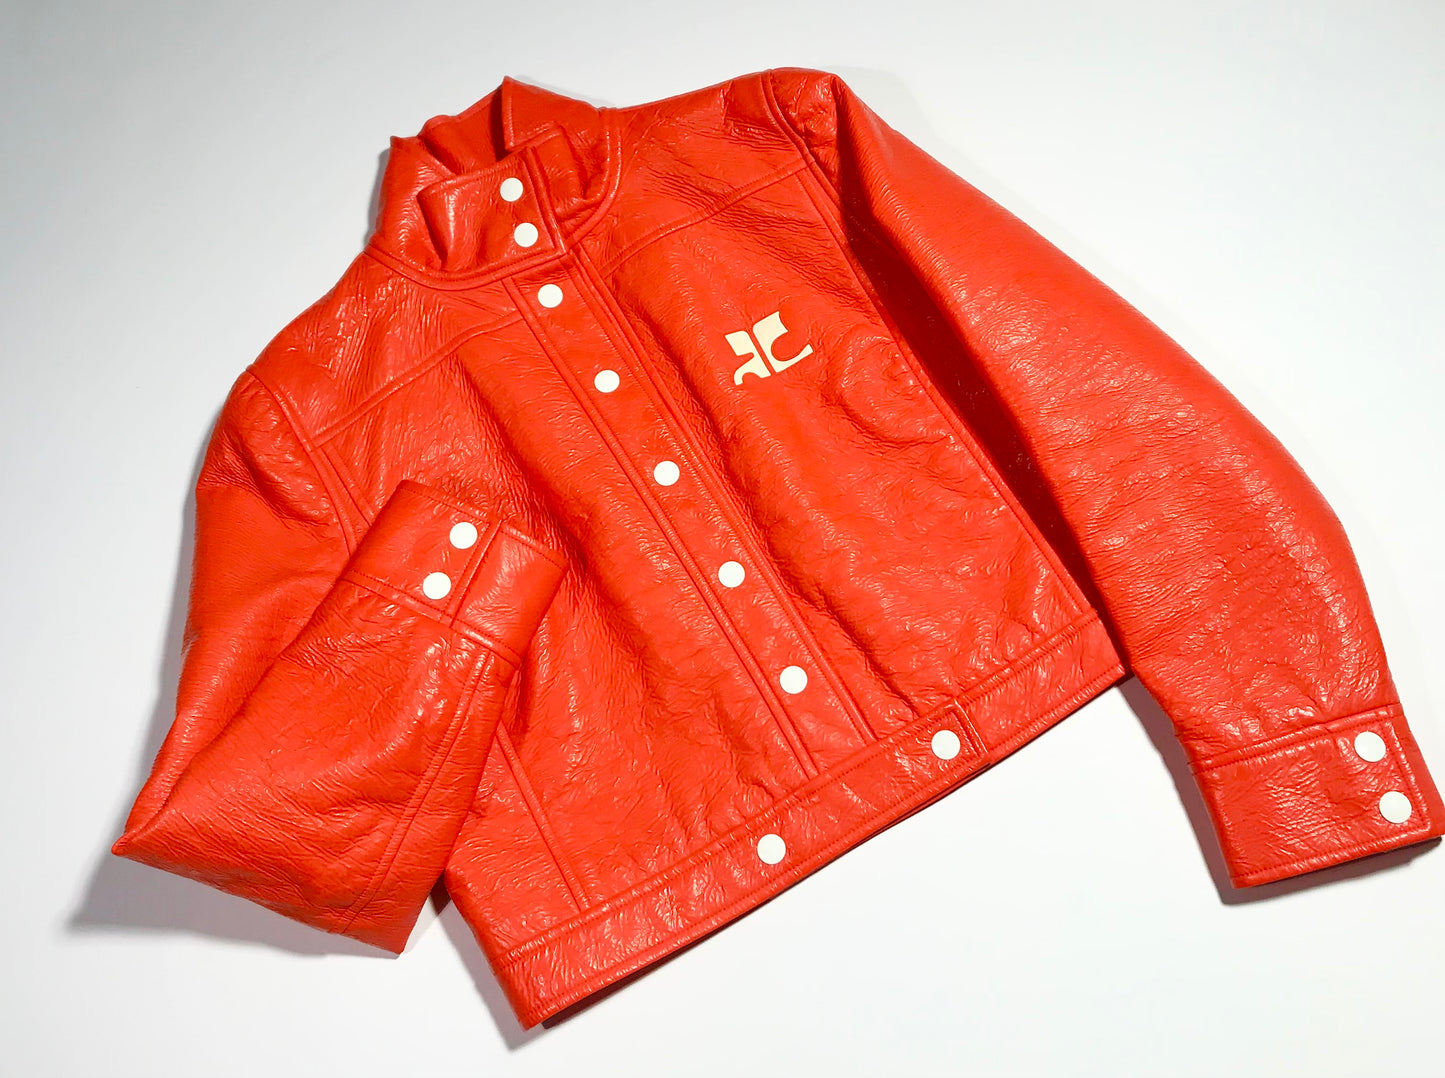 4. Courrèges orange vinyl jacket